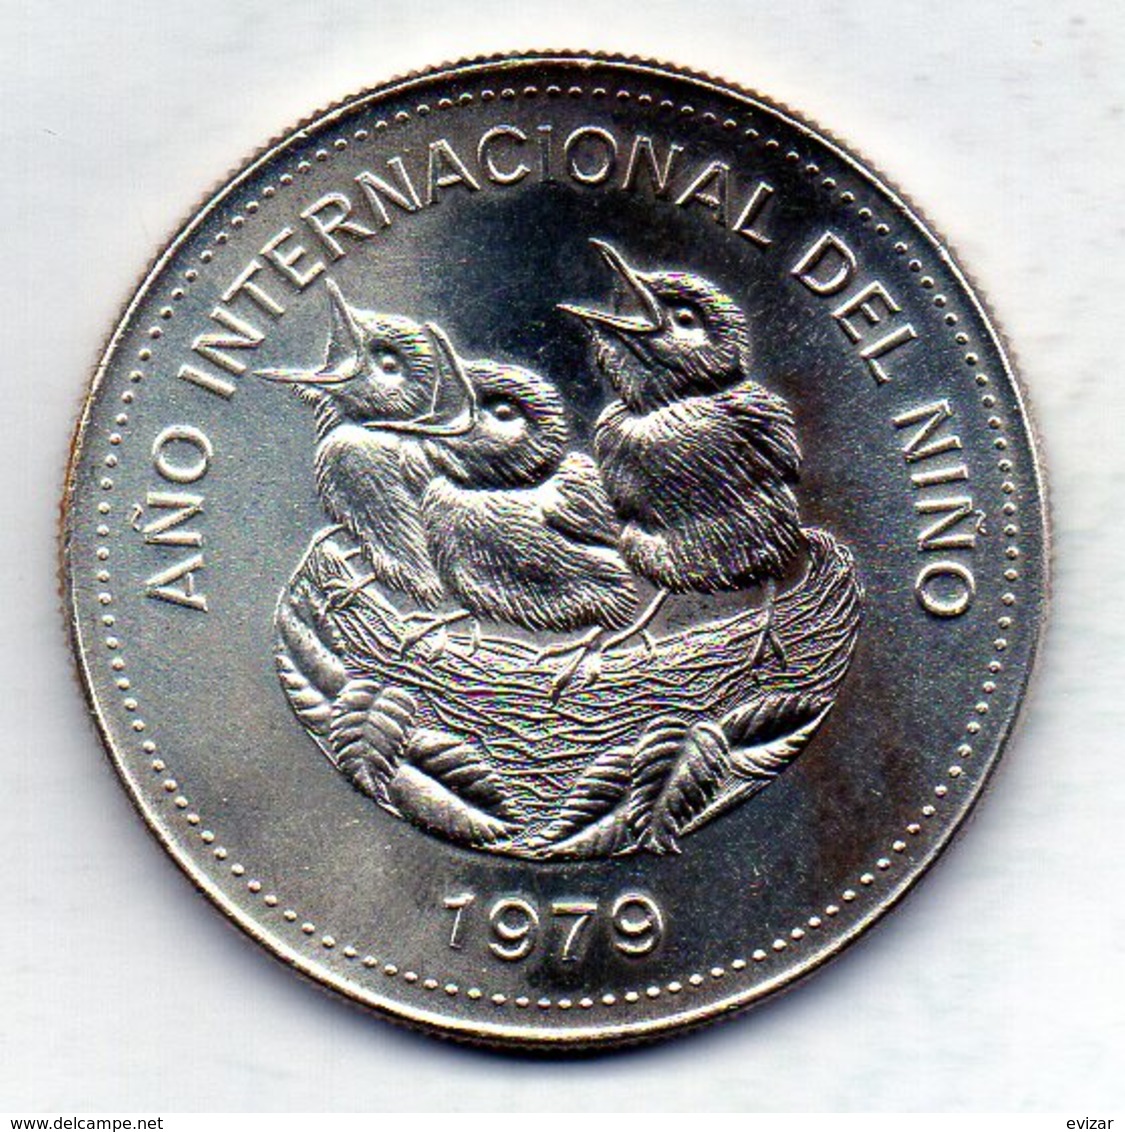 COSTA RICA, 100 Colones, Silver, Year 1979, KM #206 - Costa Rica